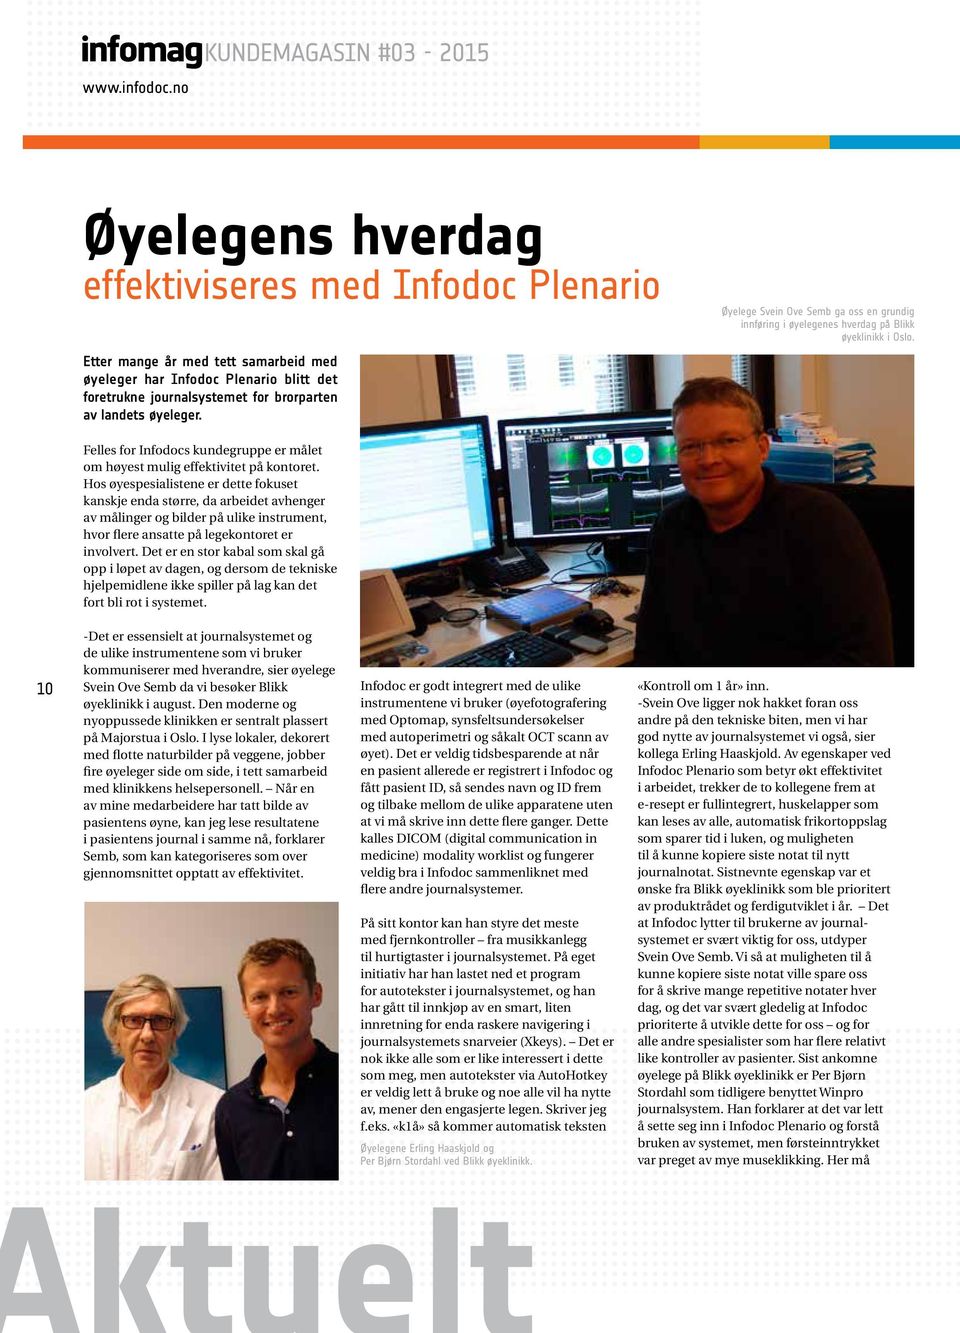 av landets øyeleger. Øyelege Svein Ove Semb ga oss en grundig innføring i øyelegenes hverdag på Blikk øyeklinikk i Oslo.